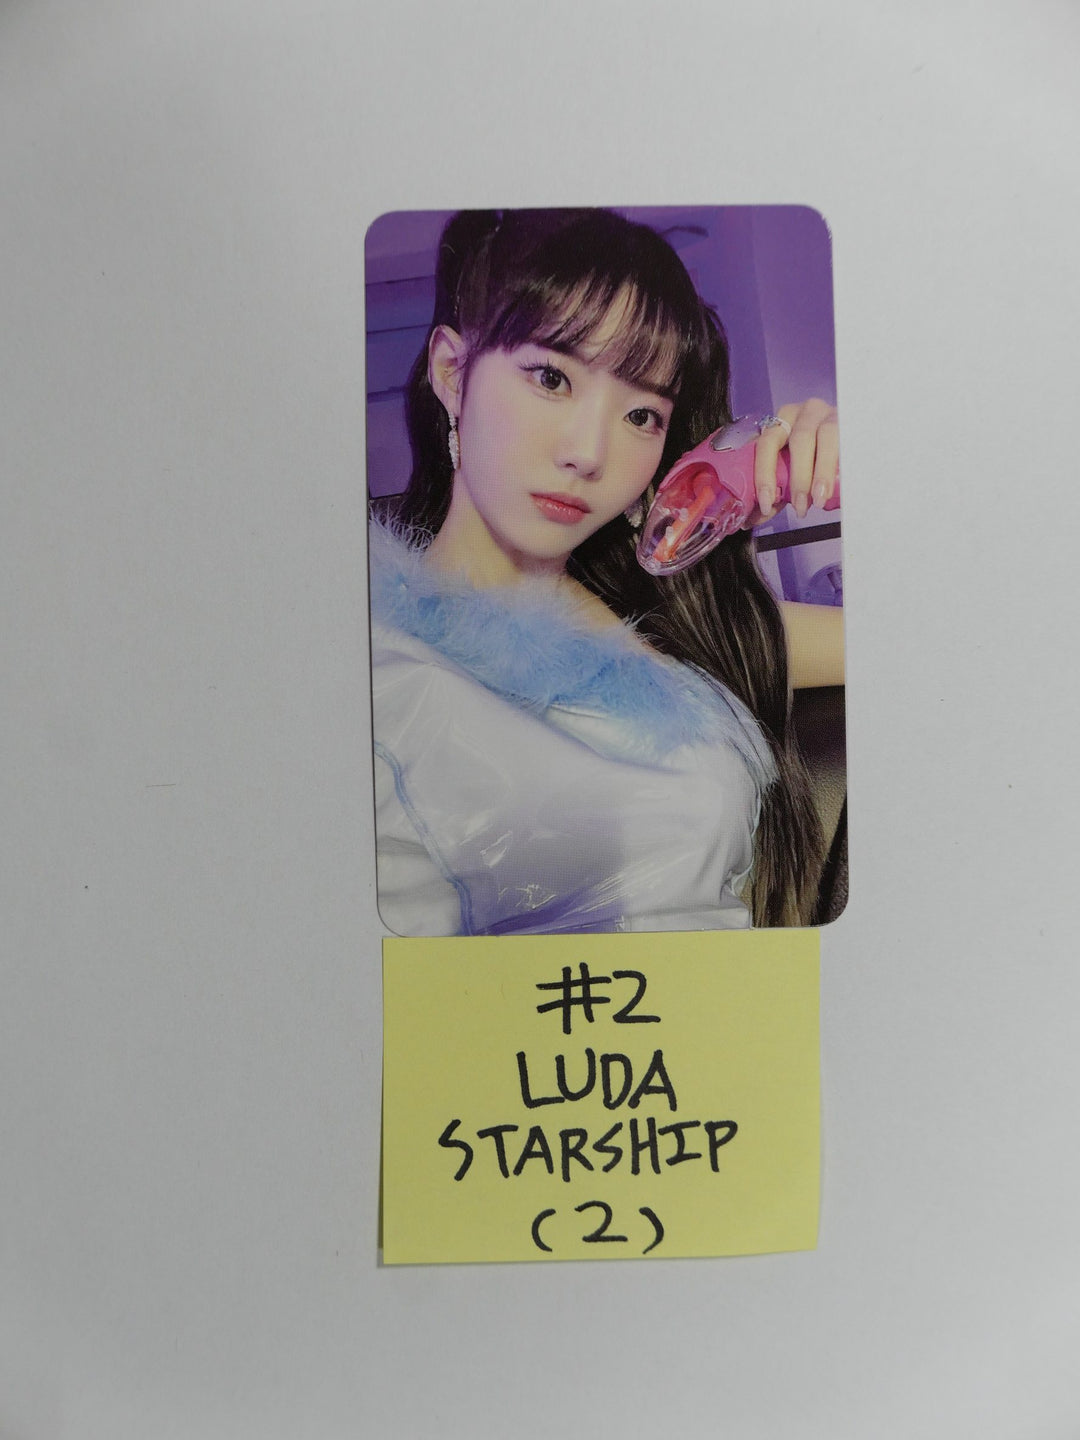 우주소녀 쵸컴 "슈퍼여퍼!" 2nd Single - 스타쉽 예약판매 혜택 포토카드